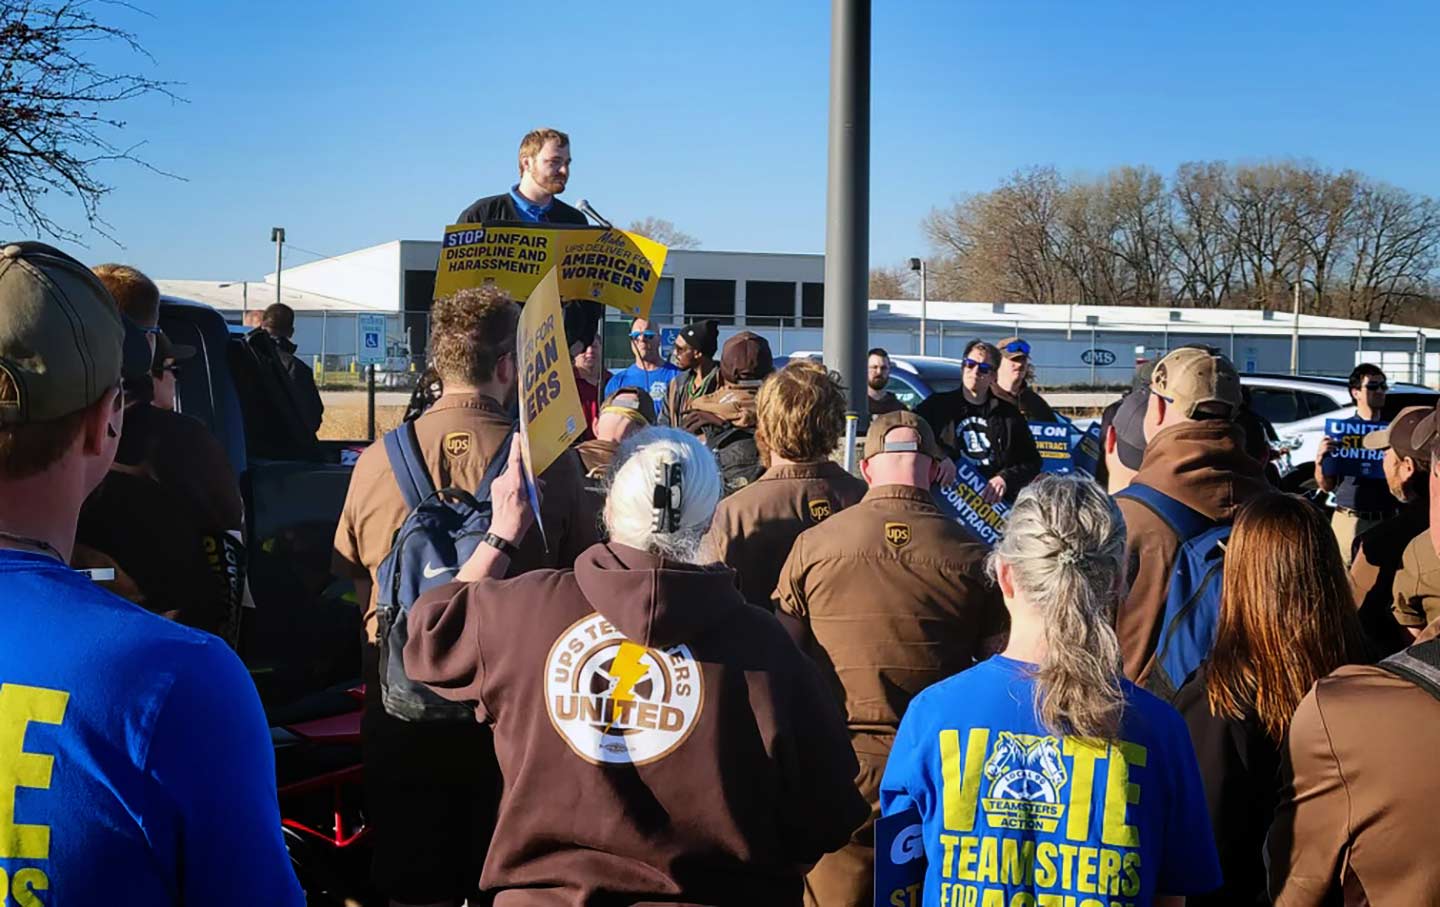 Tanner Fischer speaks in front of UPS workers in Iowa.